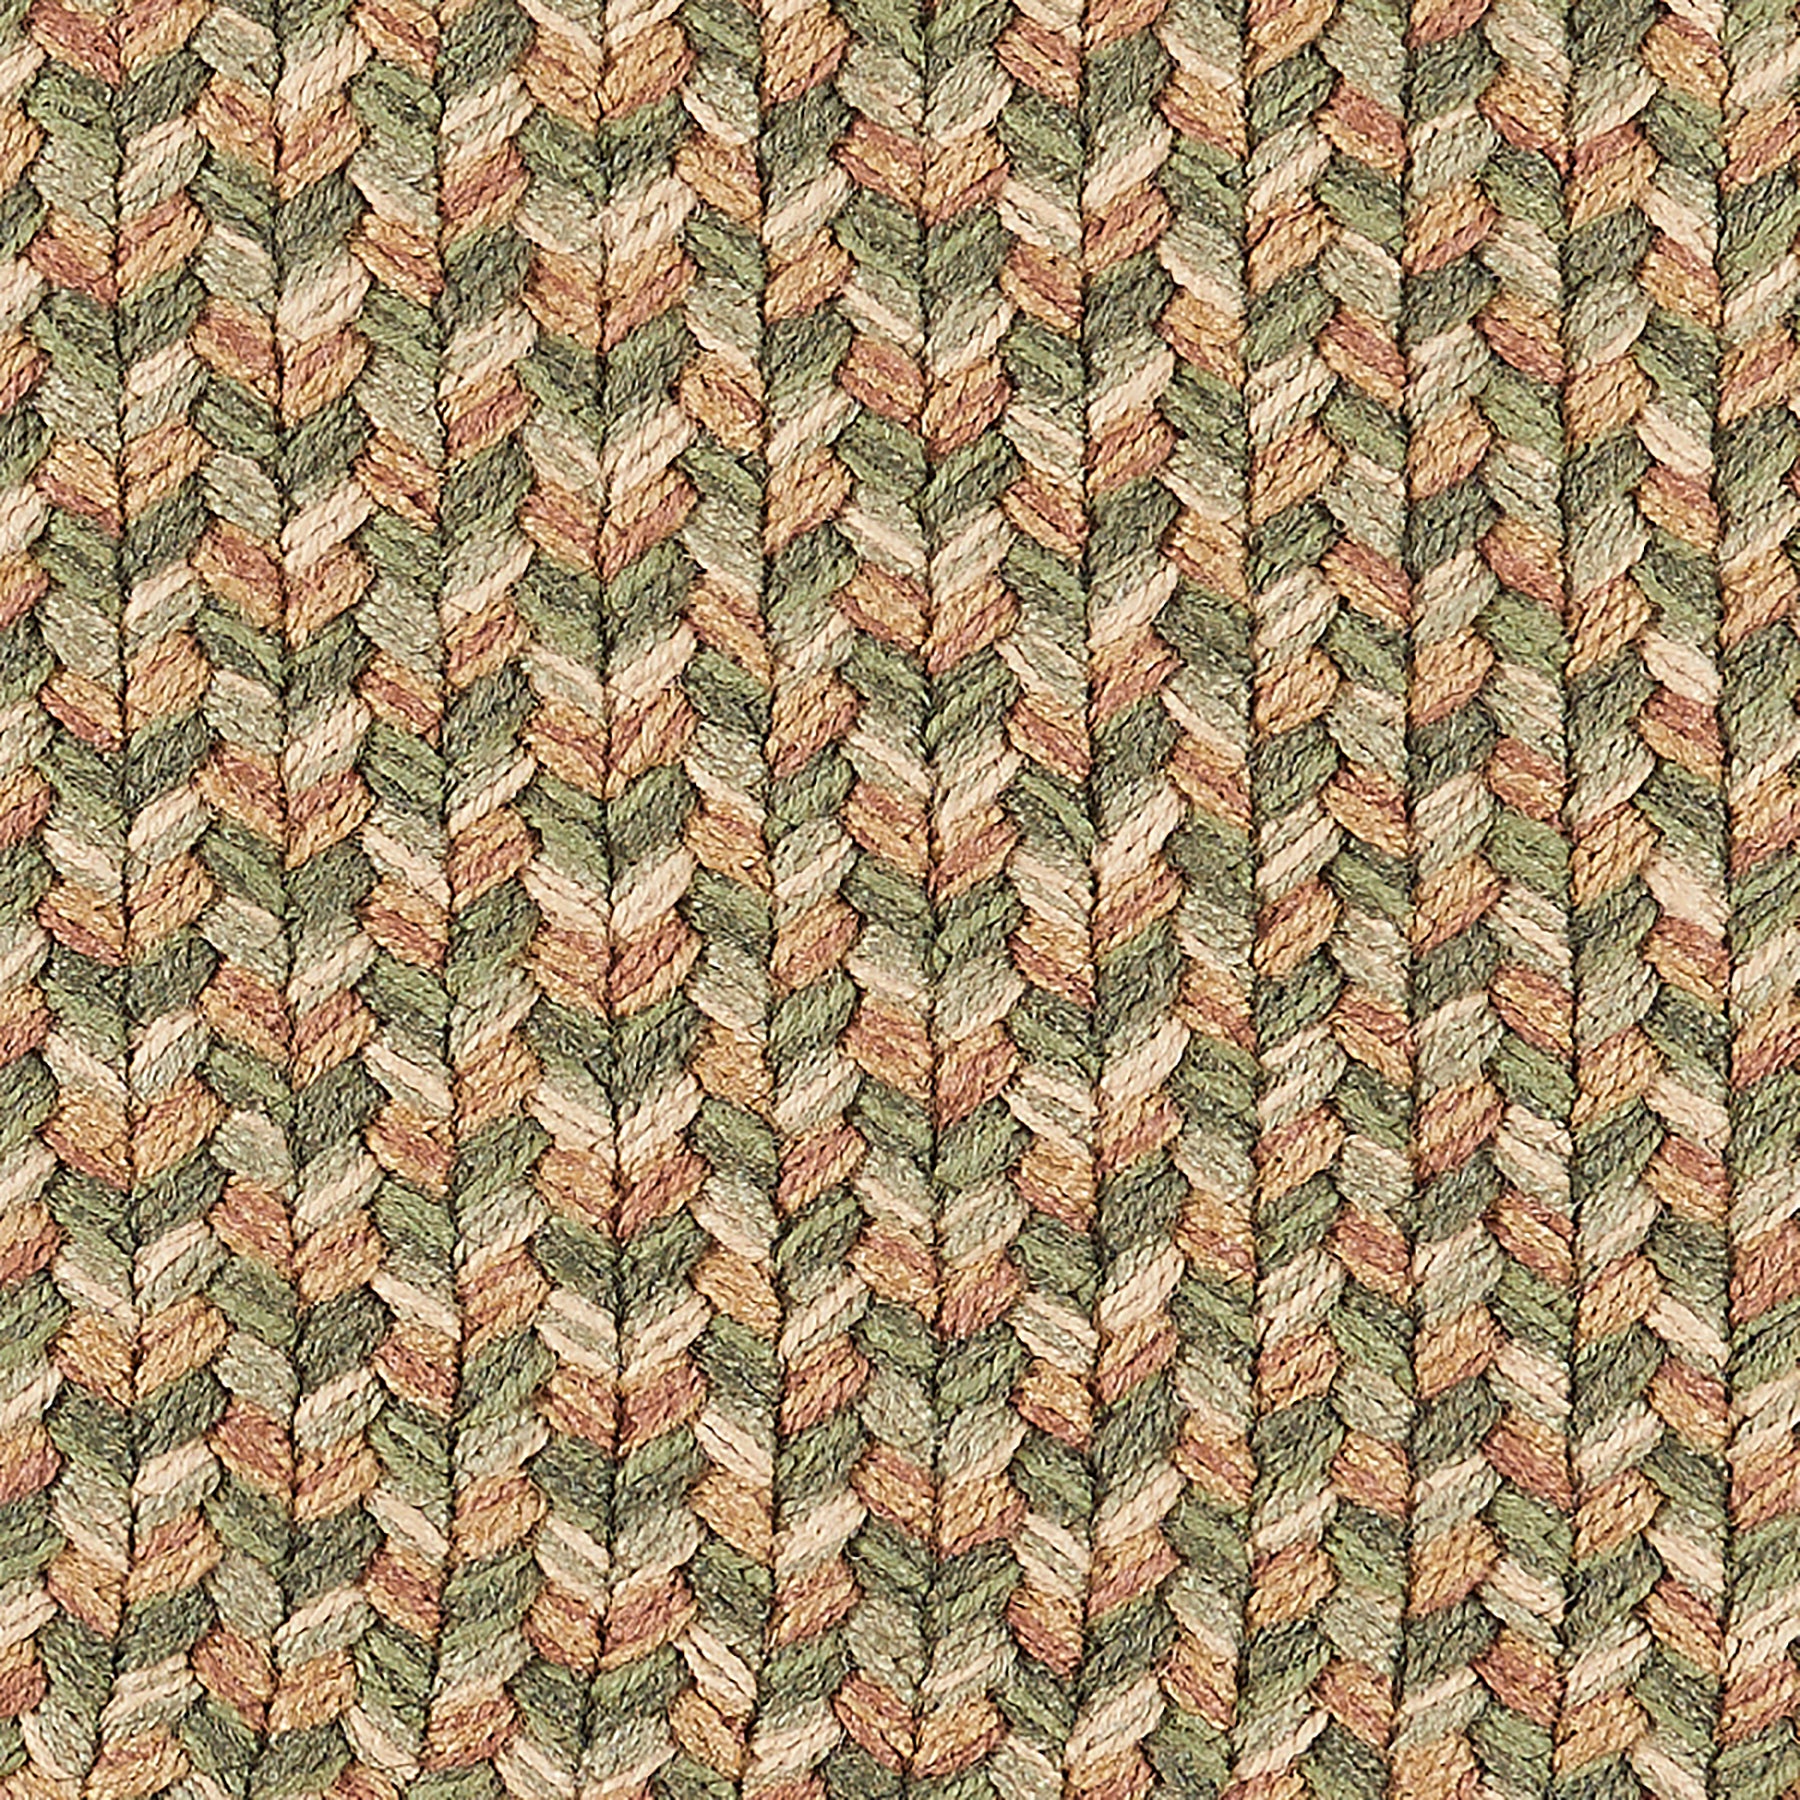 Green & Beige Outdoor Braided Rug - Sanibel Tweed Braided Rug